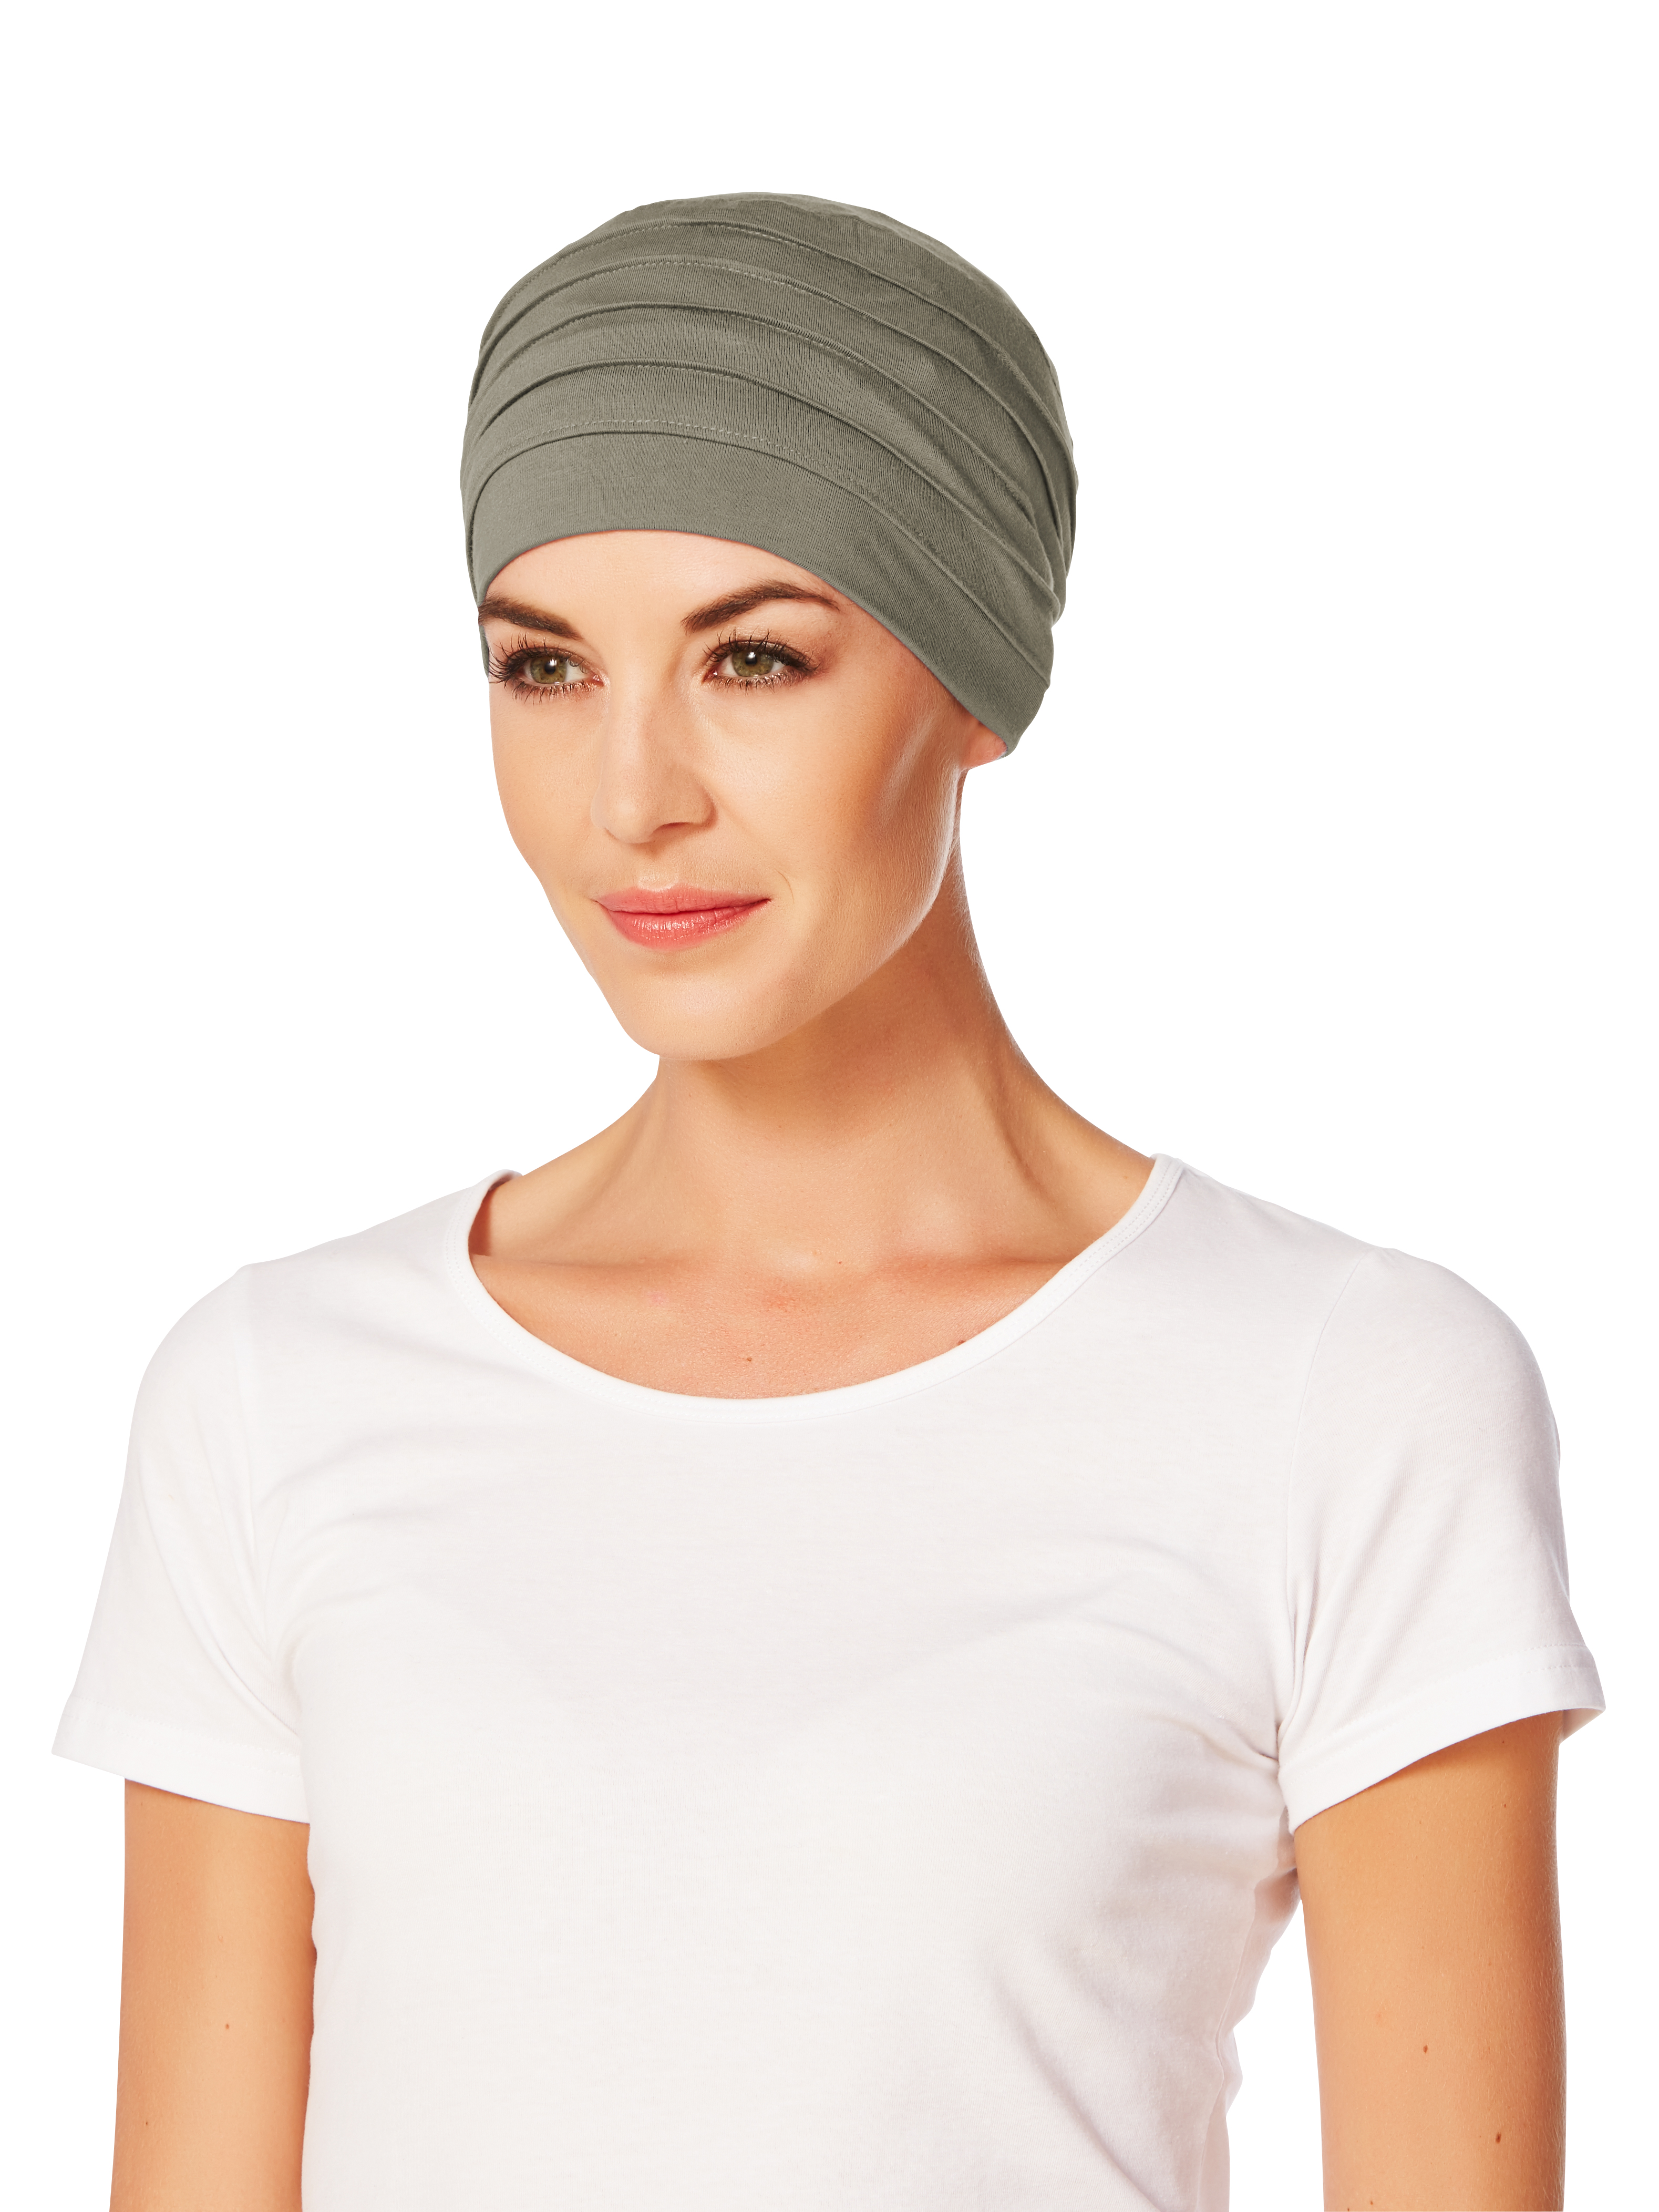 Christine Headwear Turban - Yoga - 338 brown green